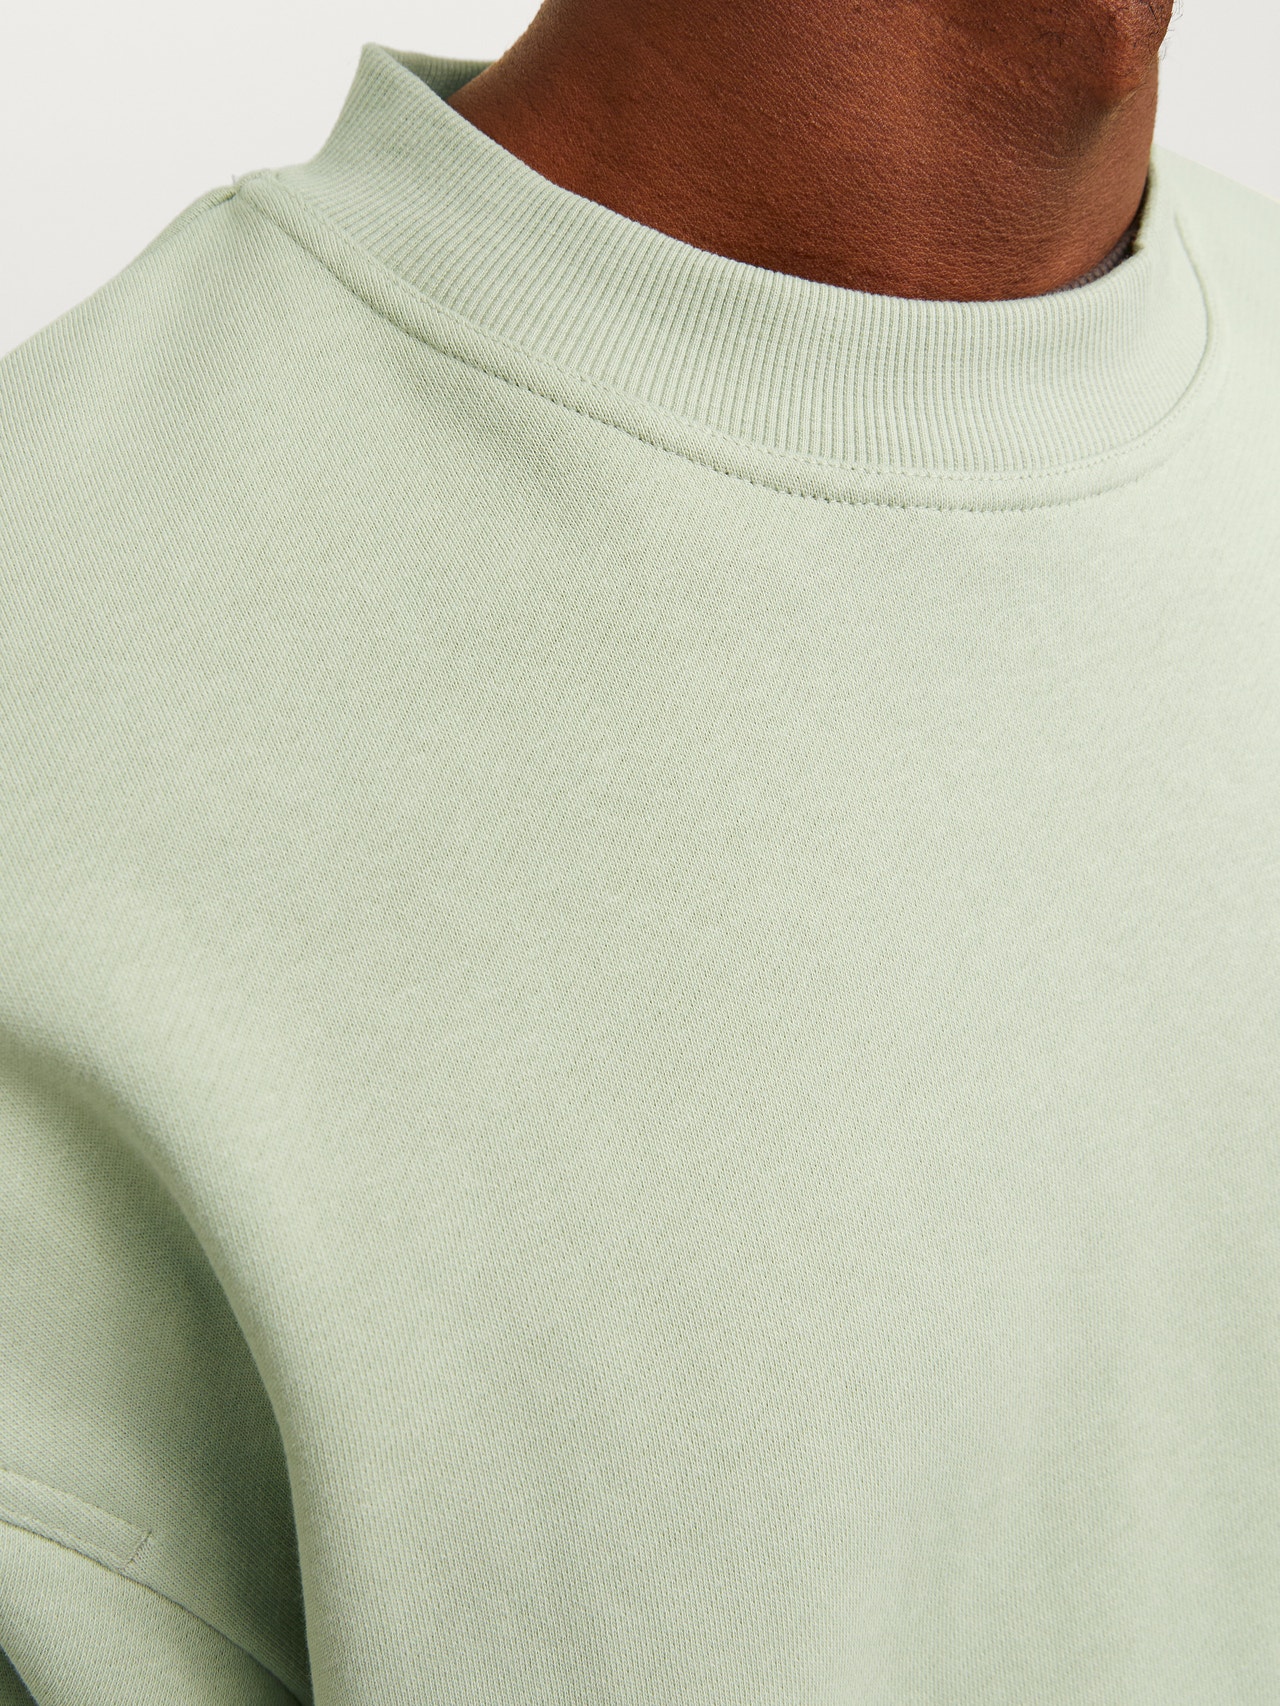 Jack & Jones Plain Crew neck Sweatshirt -Desert Sage - 12251330